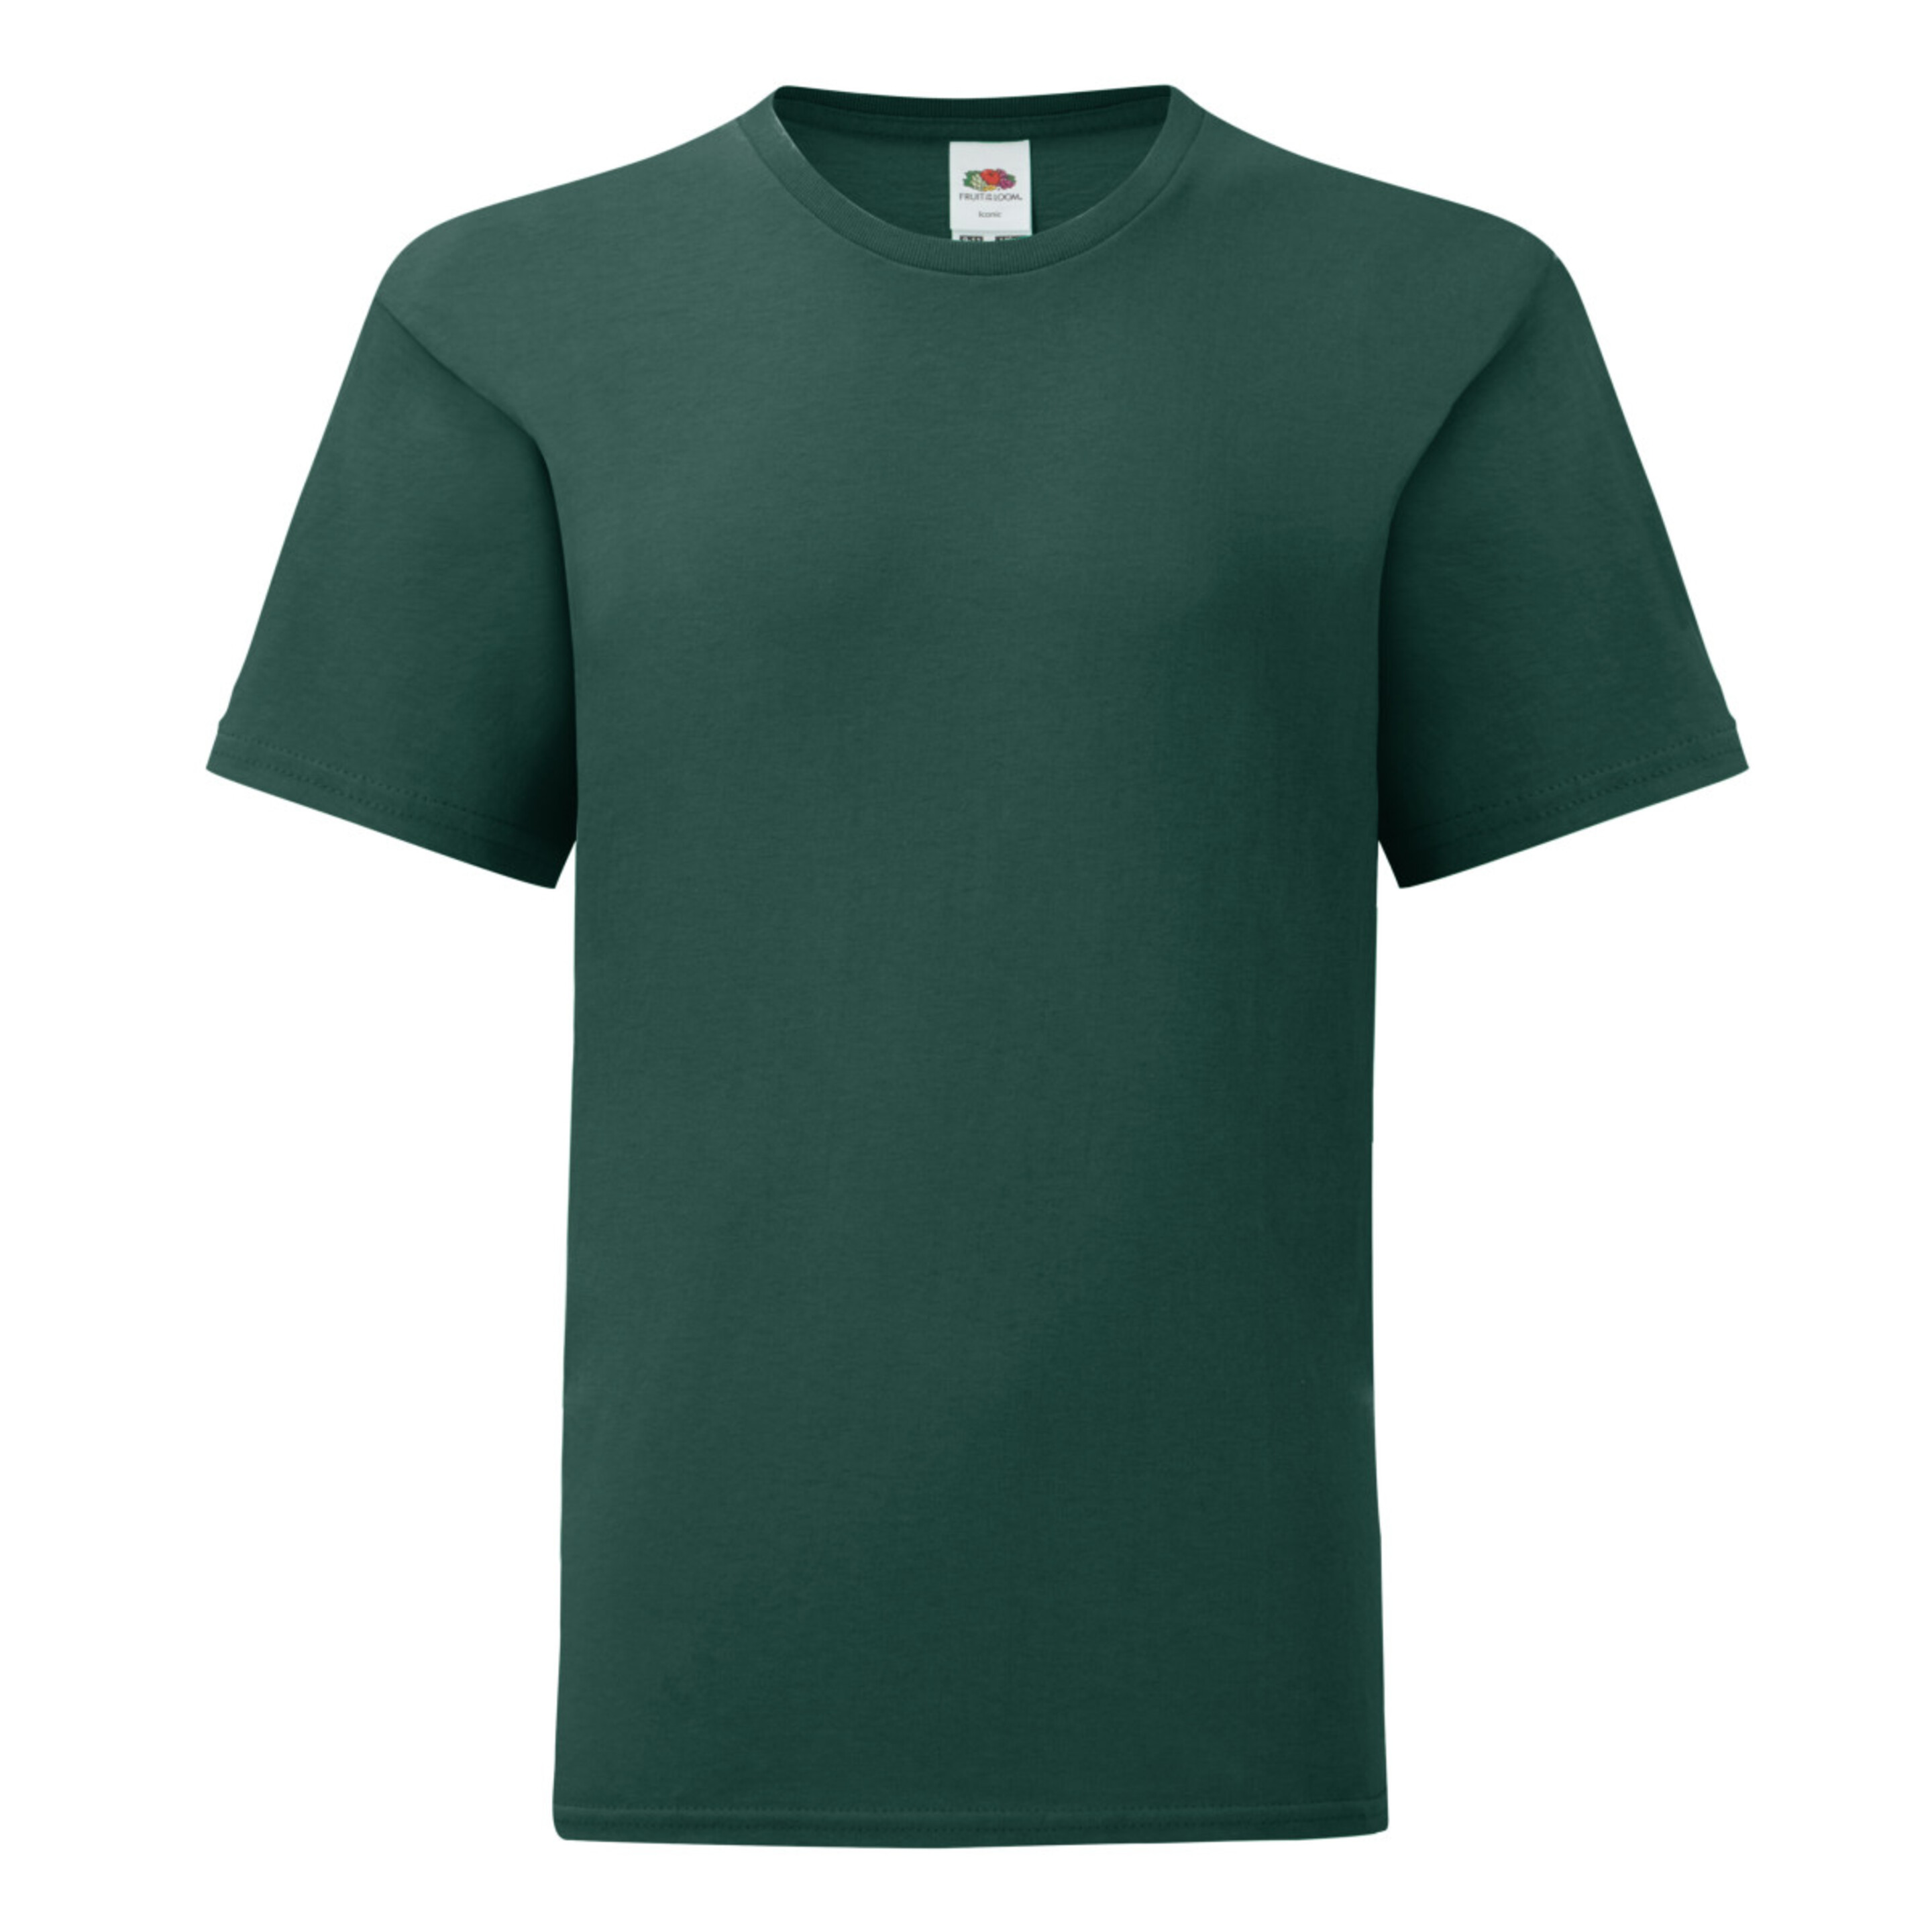 Camiseta Fruit Of The Loom Original - verde - 